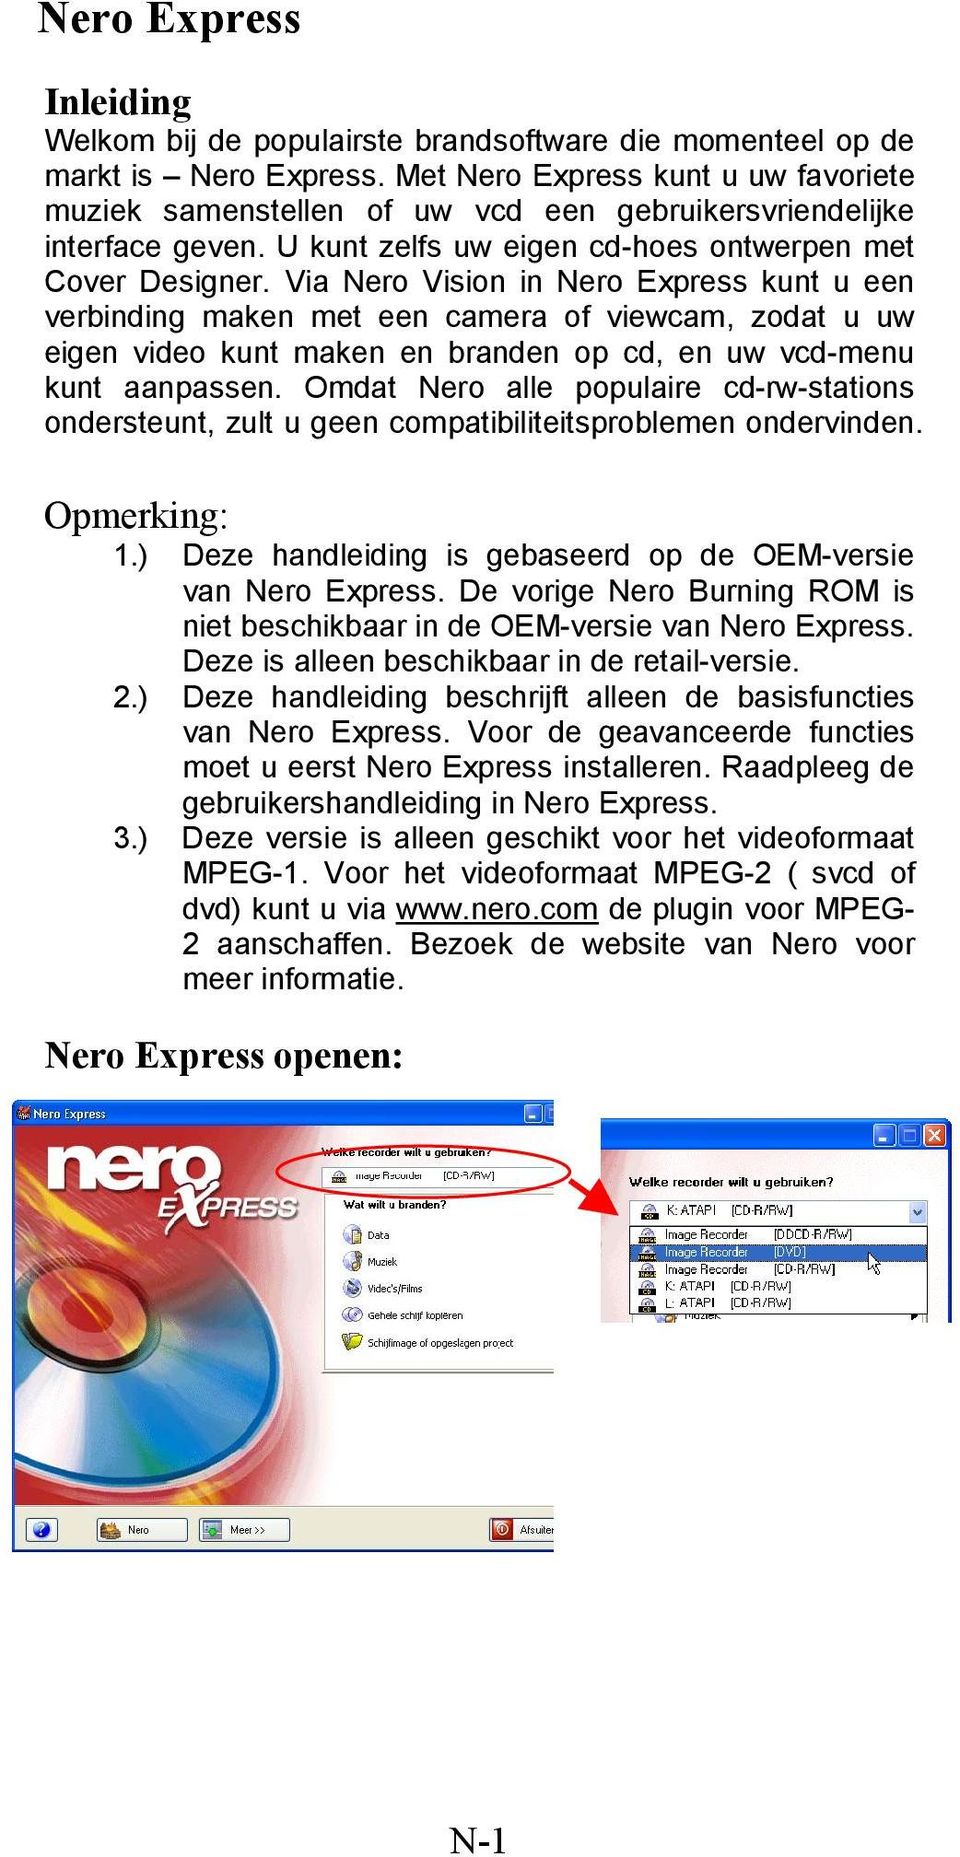 Via Nero Vision in Nero Express kunt u een verbinding maken met een camera of viewcam, zodat u uw eigen video kunt maken en branden op cd, en uw vcd-menu kunt aanpassen.